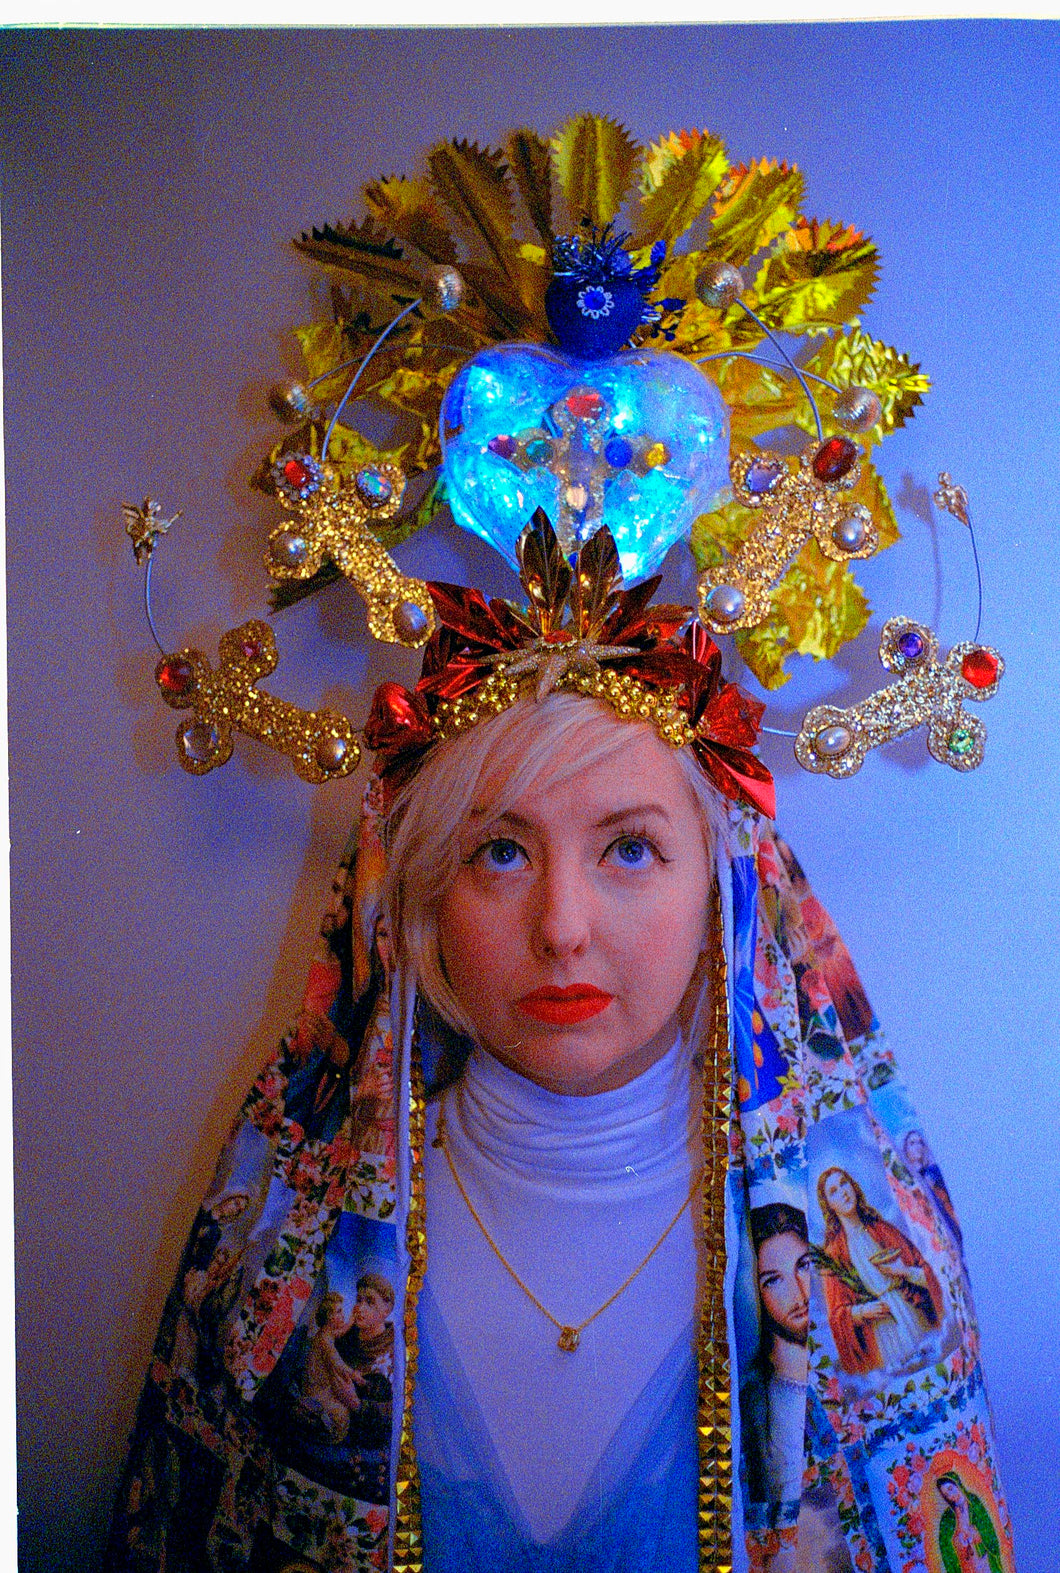 Virgin Mary light up headdress